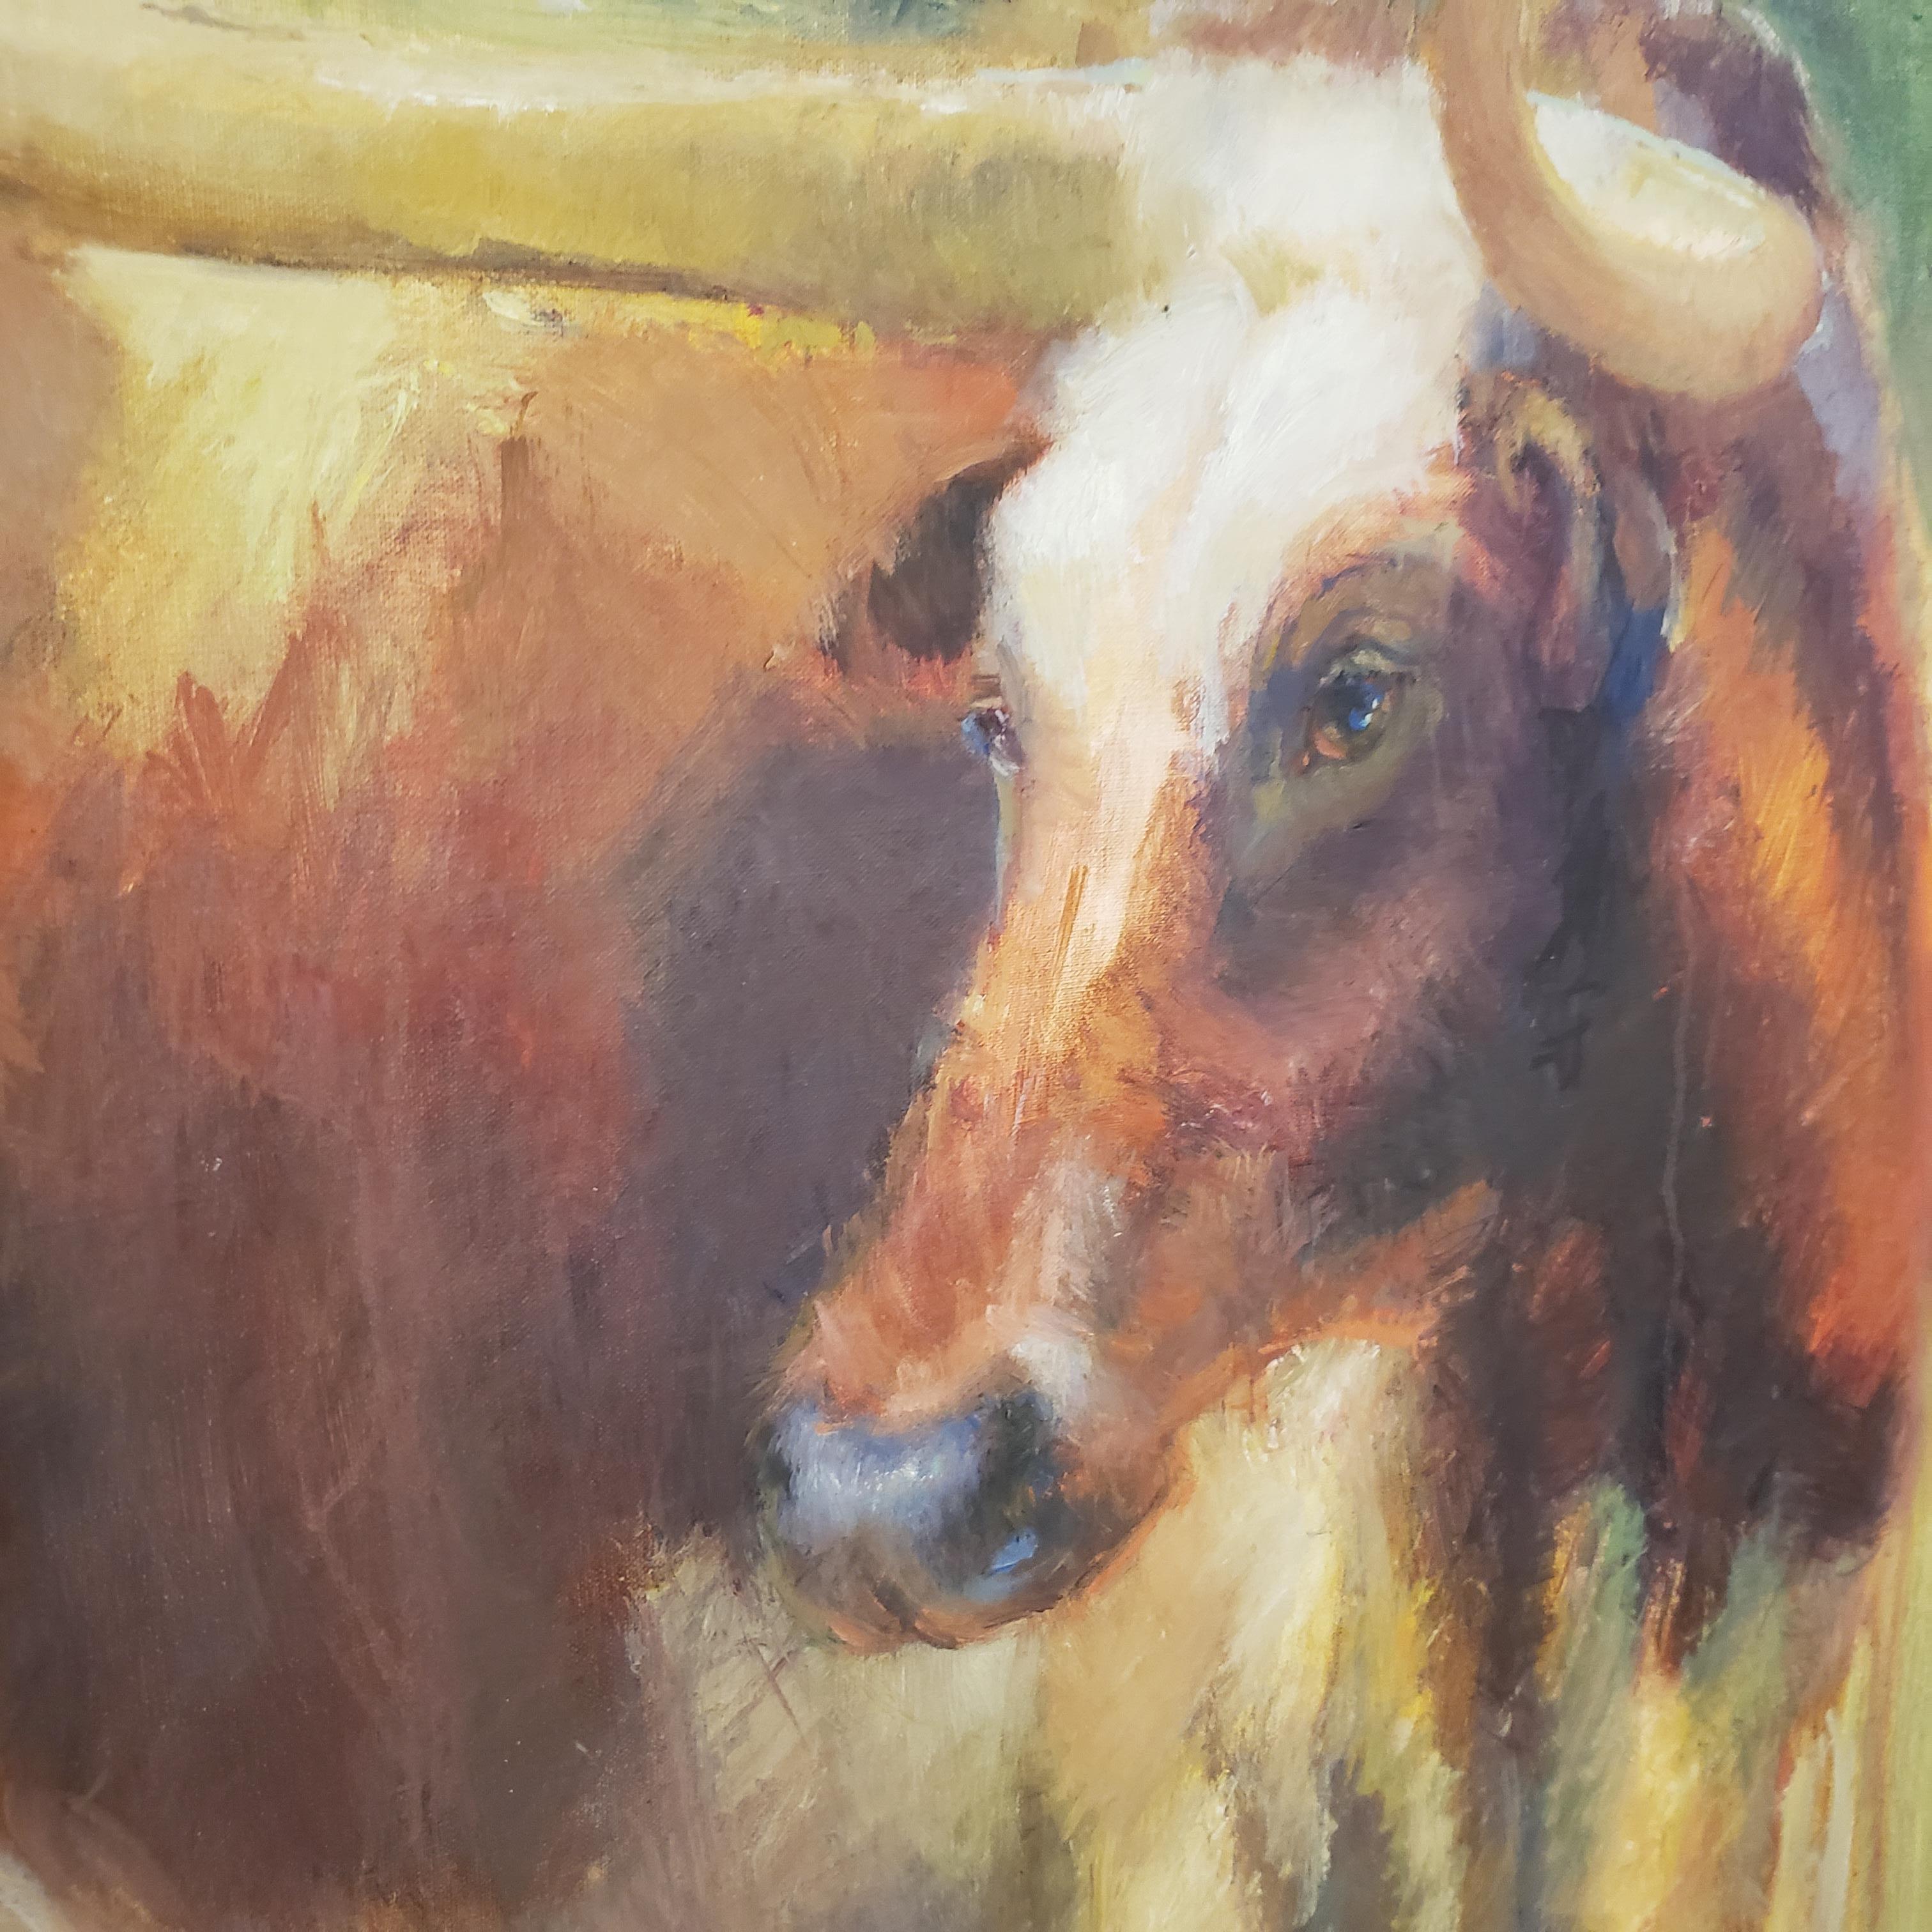 Blick  zeigt das berühmte Texas Longhorn  auf einer texanischen Ranch.  Es hat einen impressionistischen Stil, wie er in vielen Texas-Gemälden von Virginia Vaughan zu sehen ist. Sie ist bekannt für ihre Bilder von Tieren, texanischen Missionen und